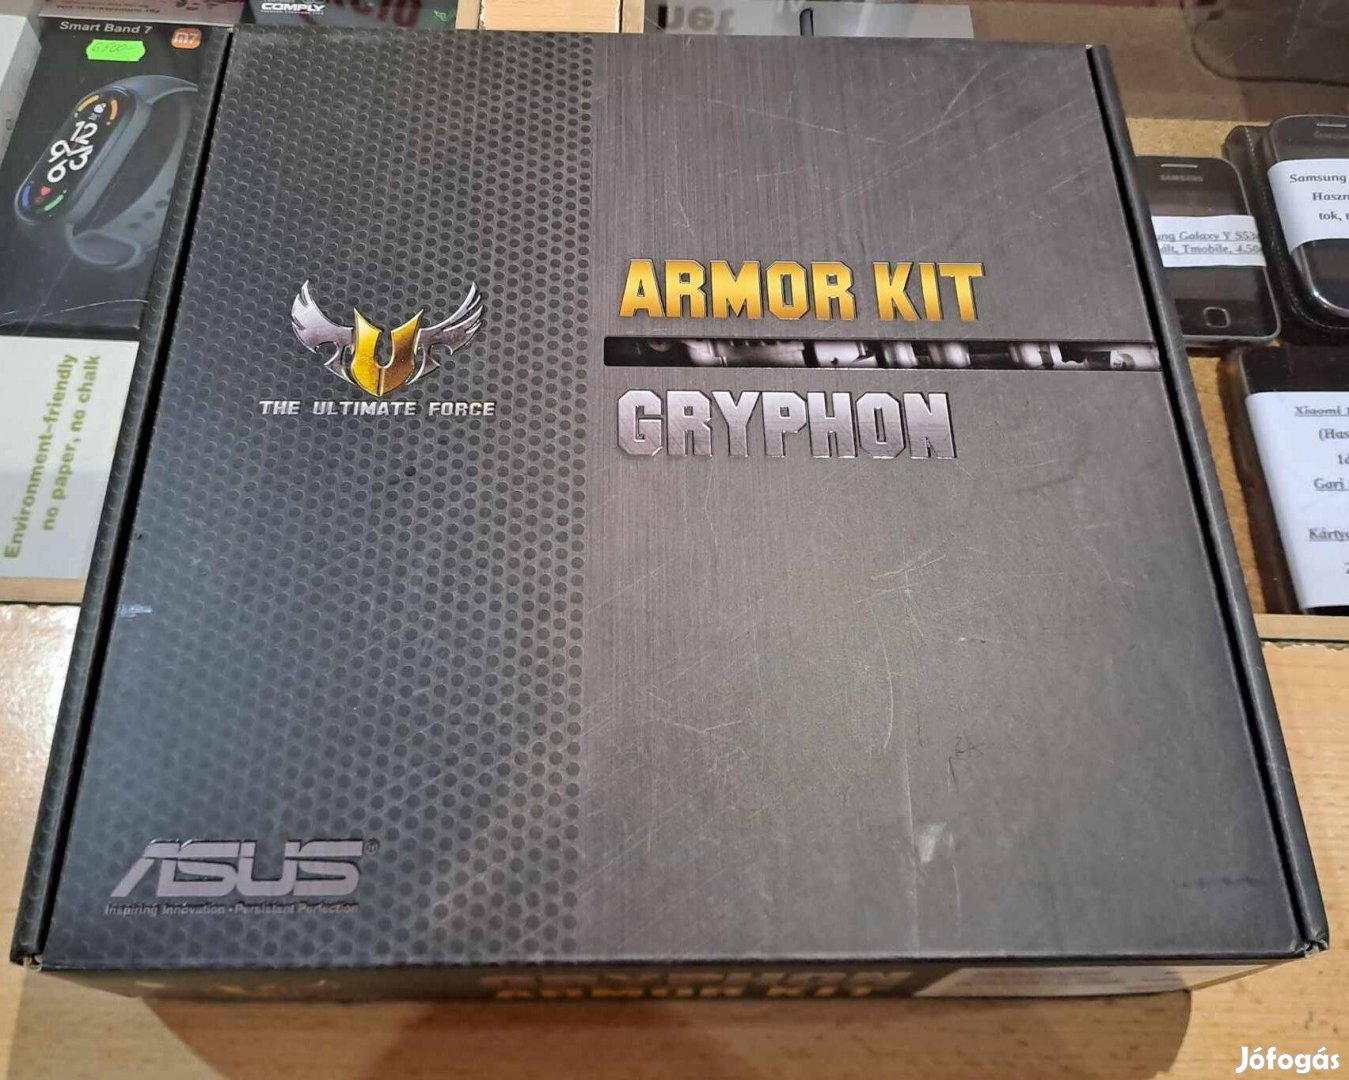 Asus Grypton Armor Kit!